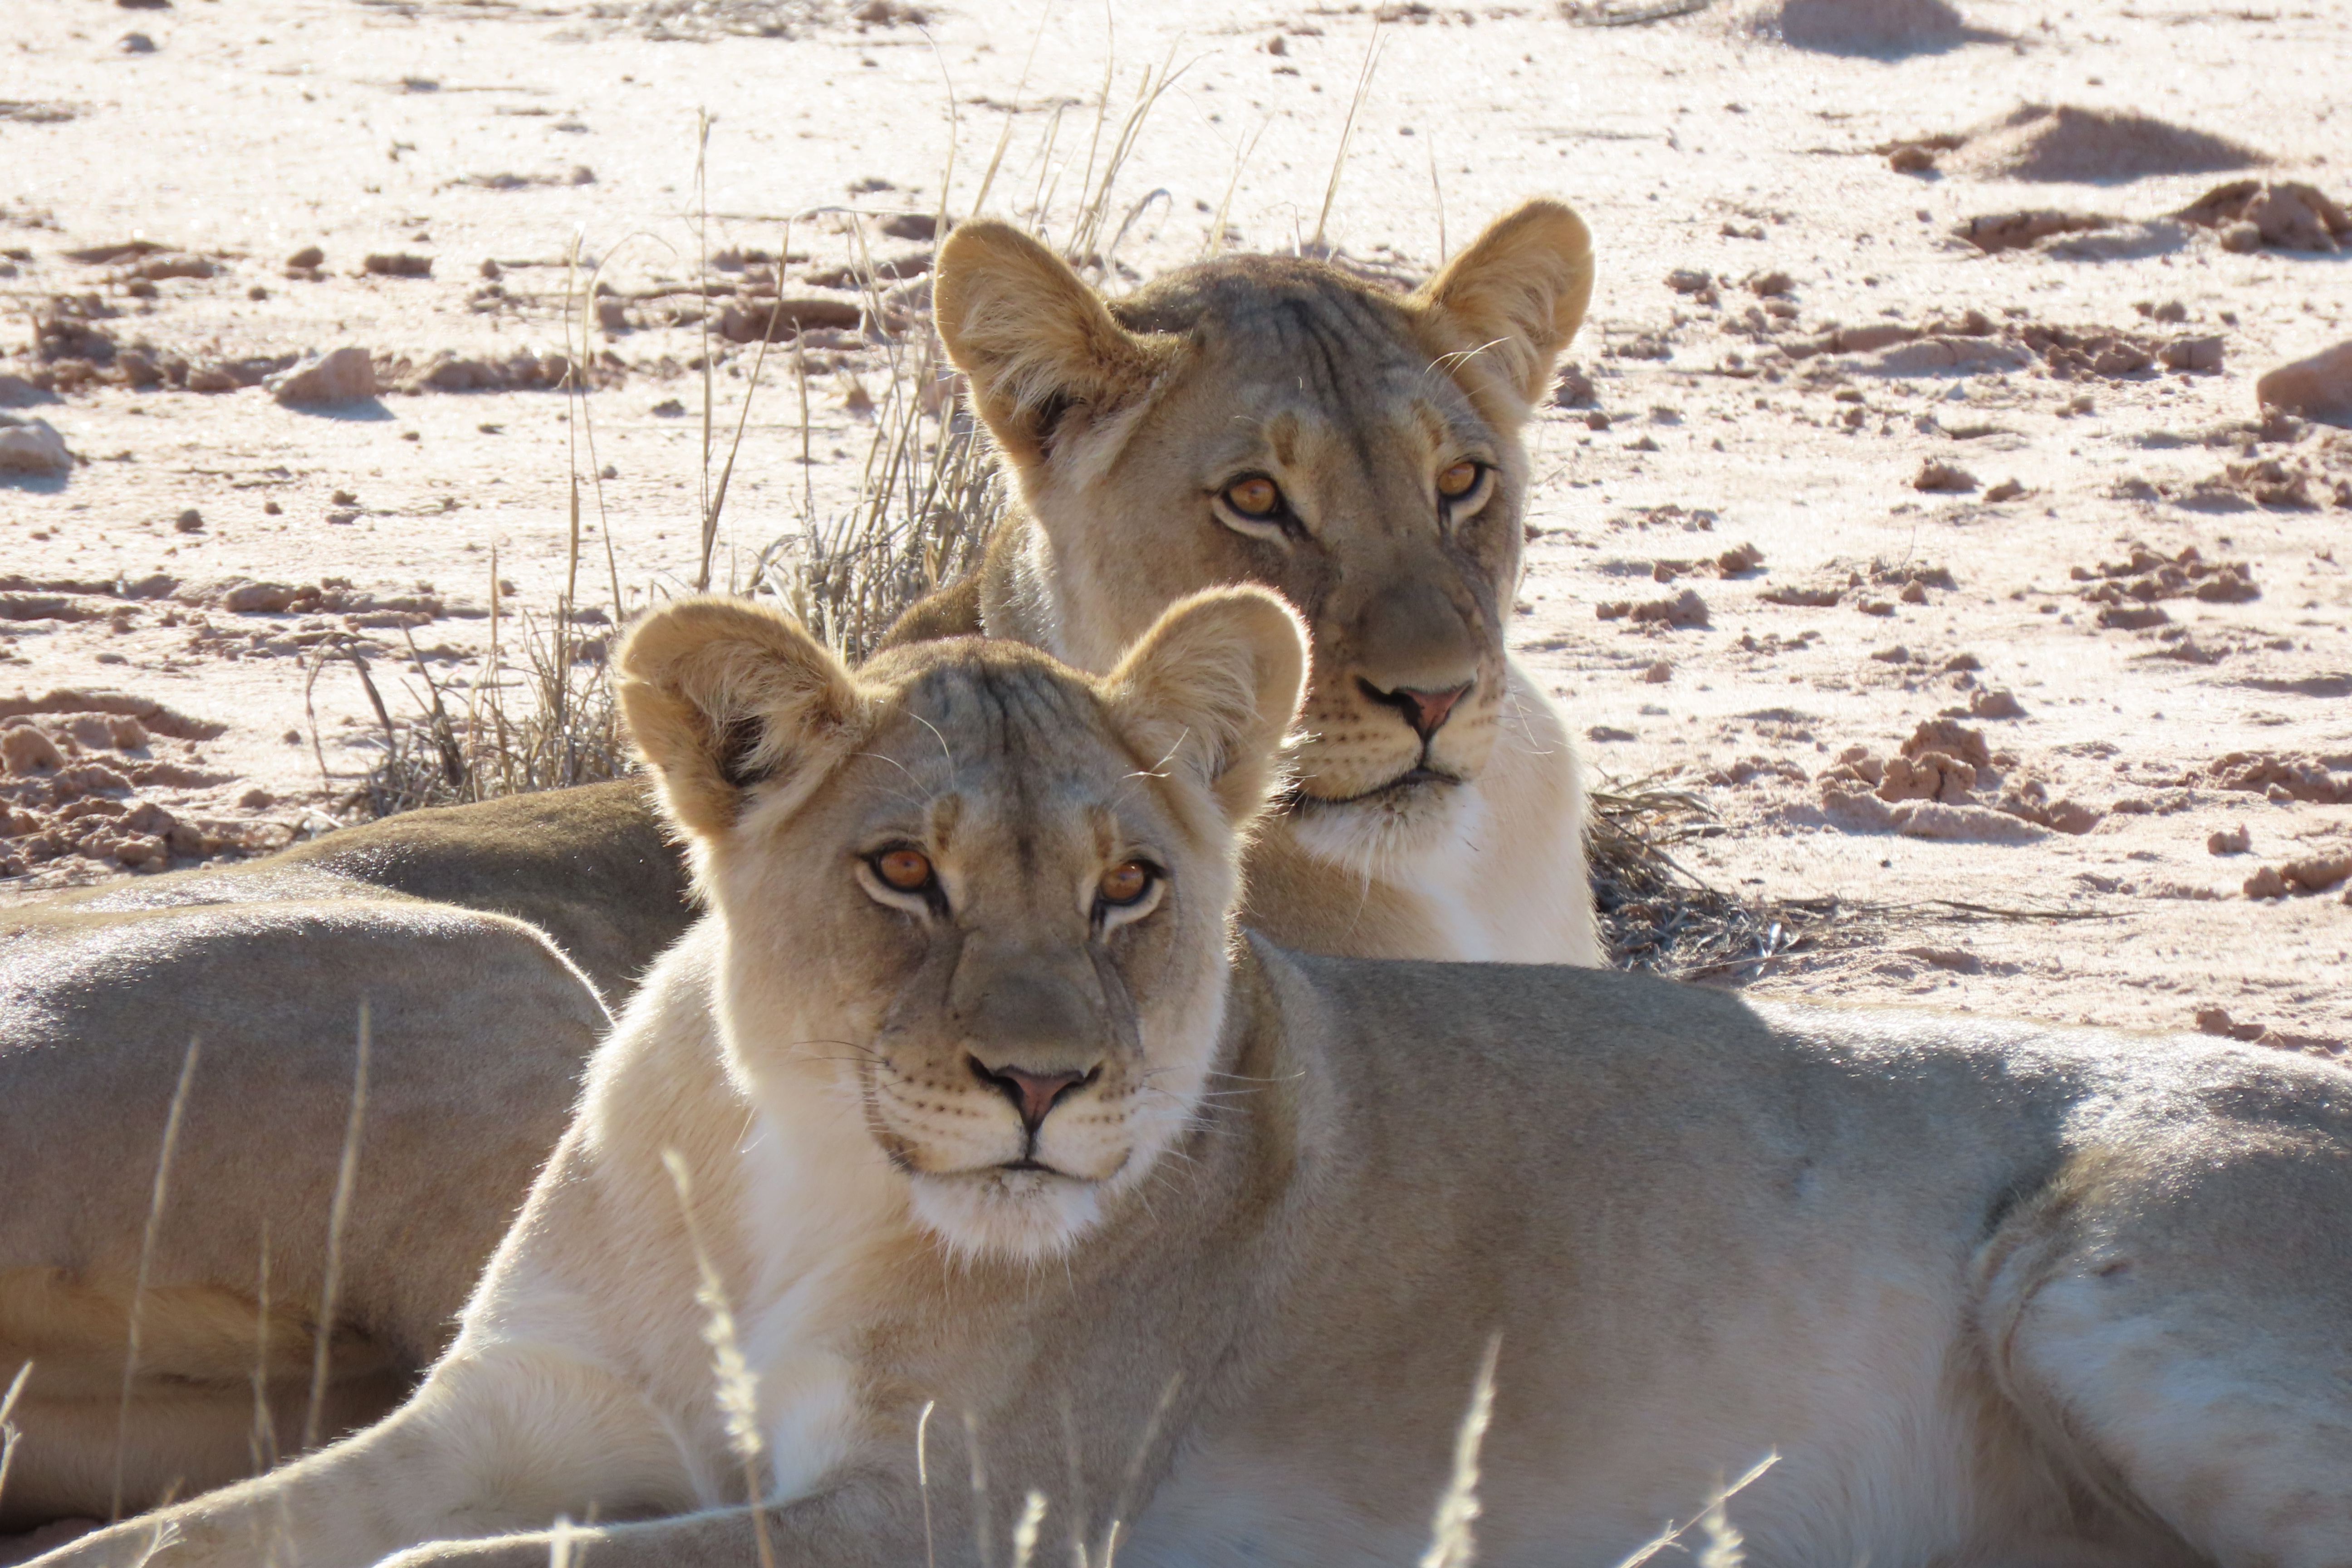 Kalahari Safaris